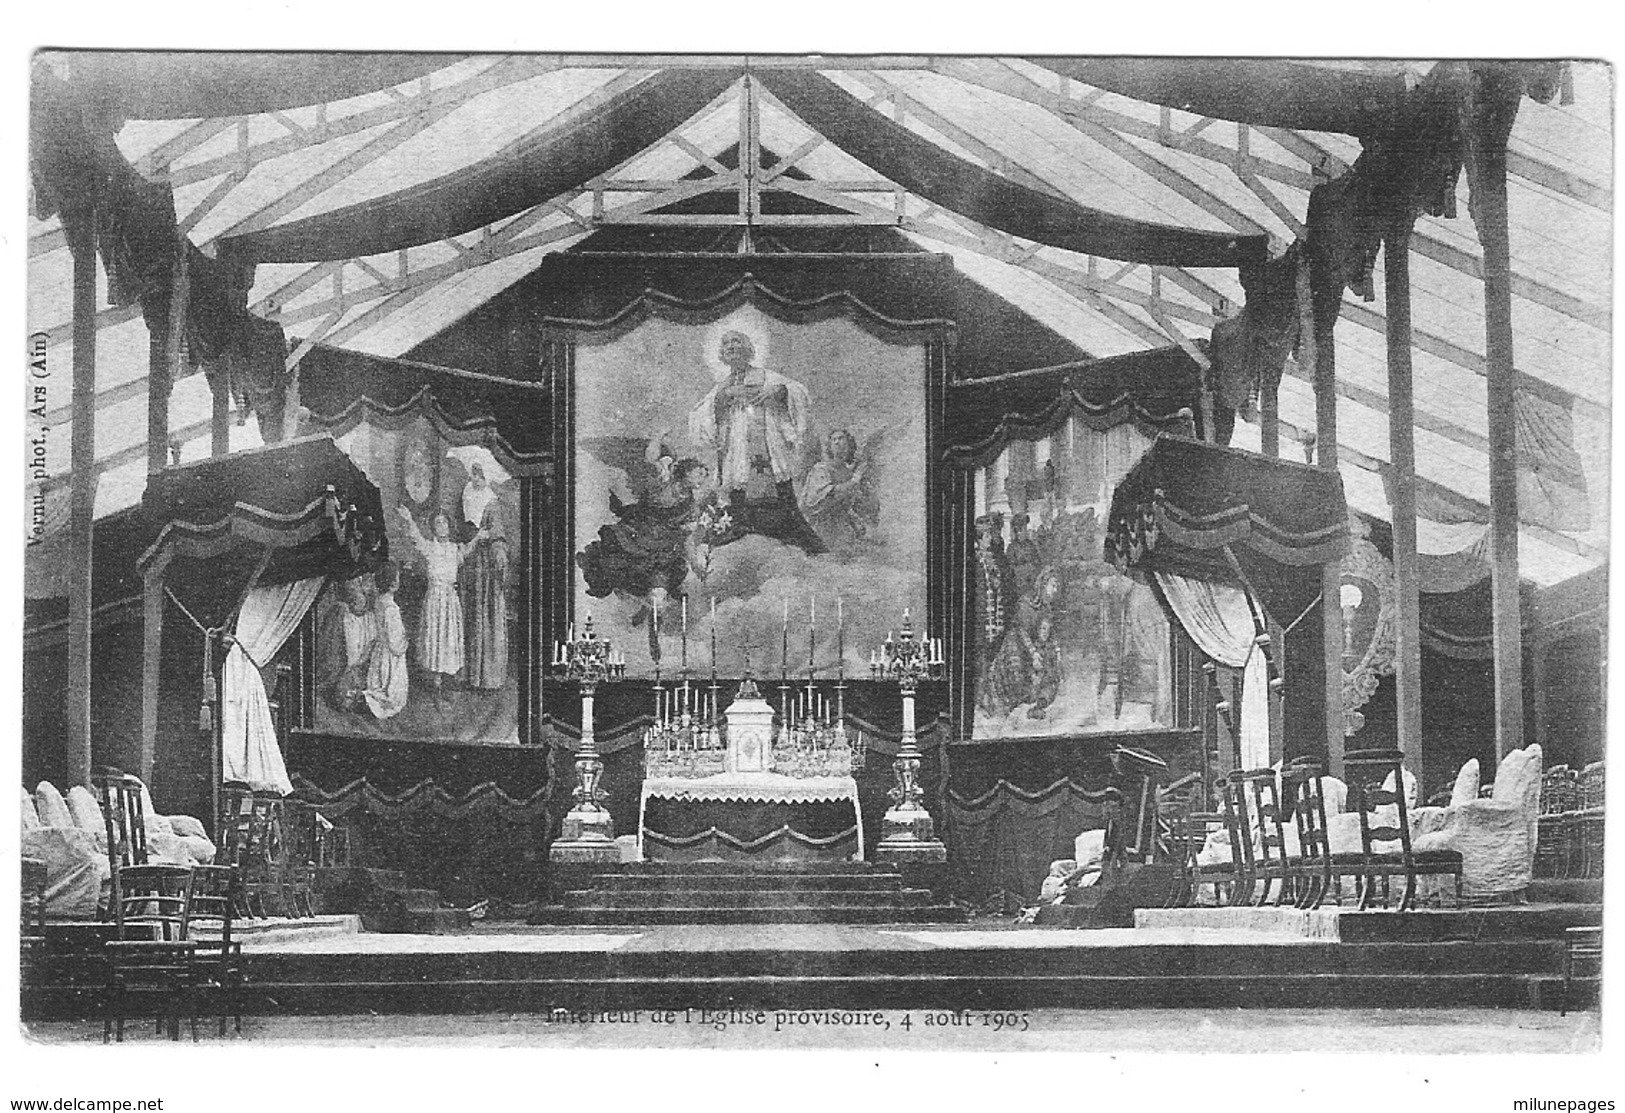 01 AIN Intérieur De L'église Provisoire D'ARS Le 4 Aout 1905 - Ars-sur-Formans